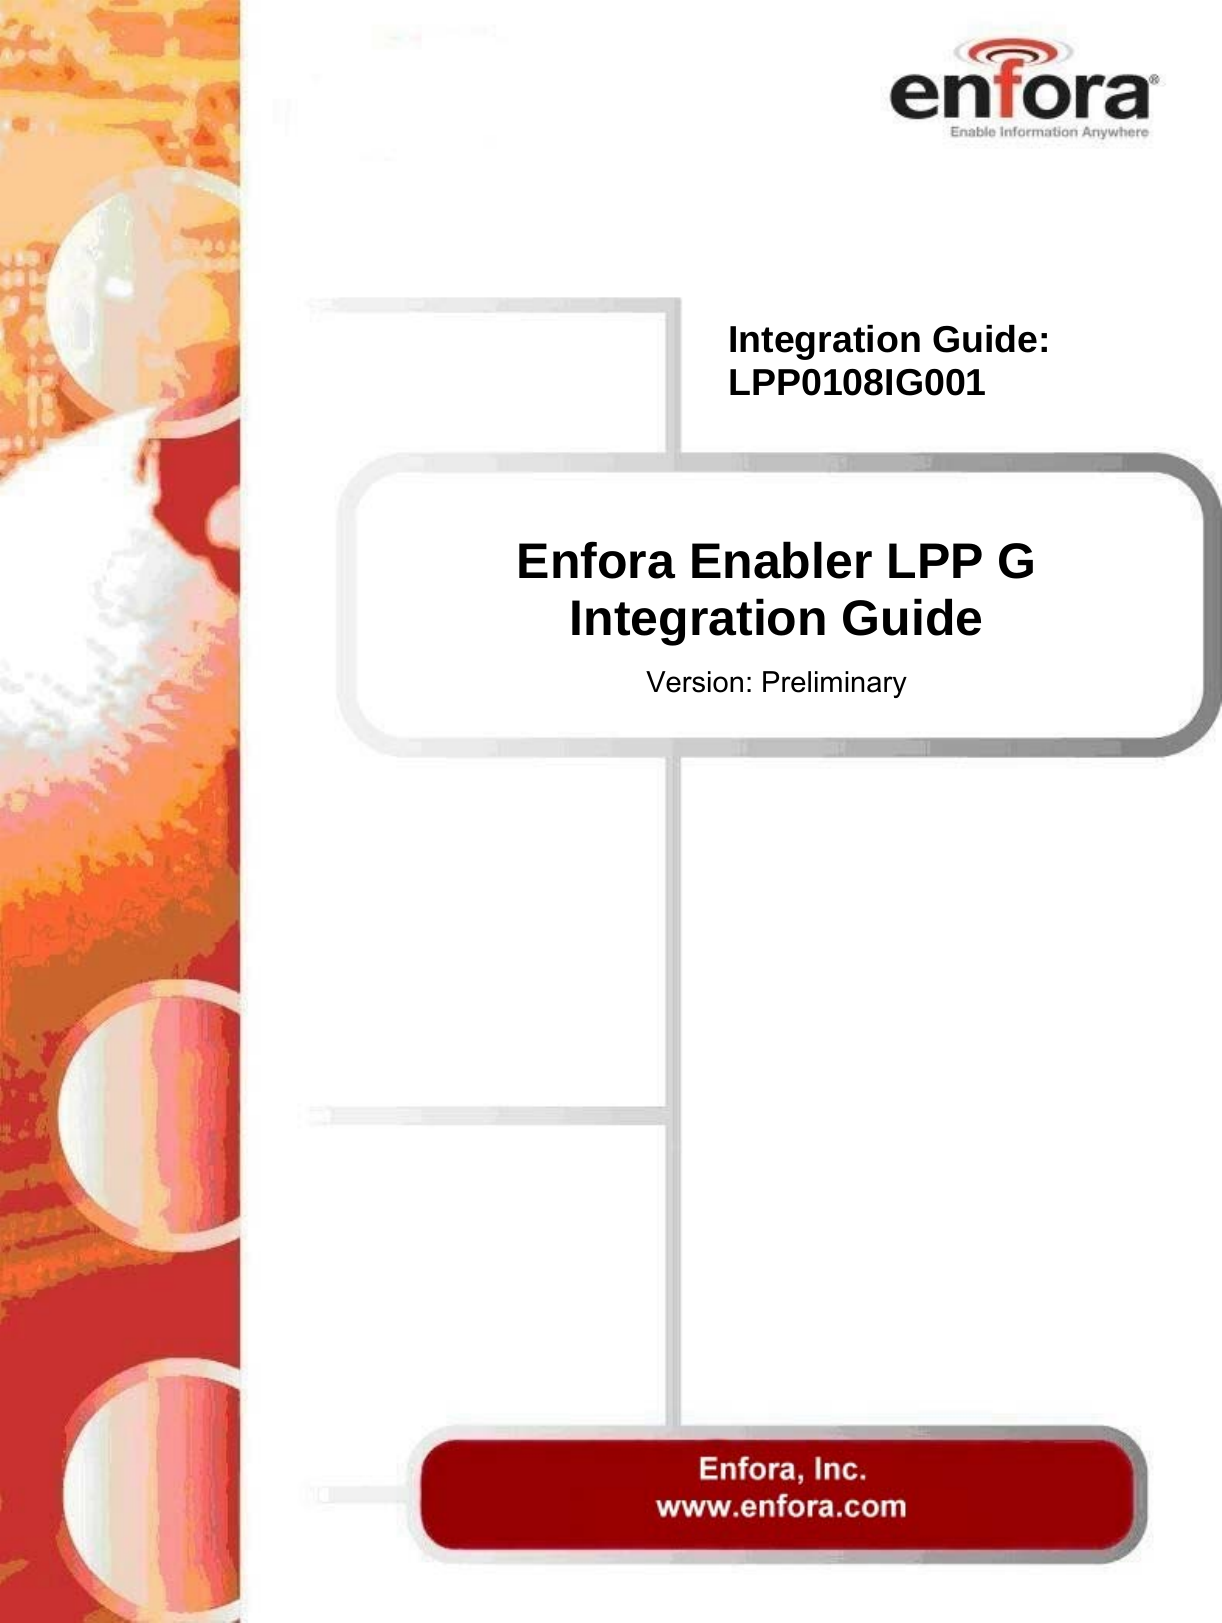   Enfora Enabler LPP G Integration Guide  Version: Preliminary Integration Guide: LPP0108IG001 